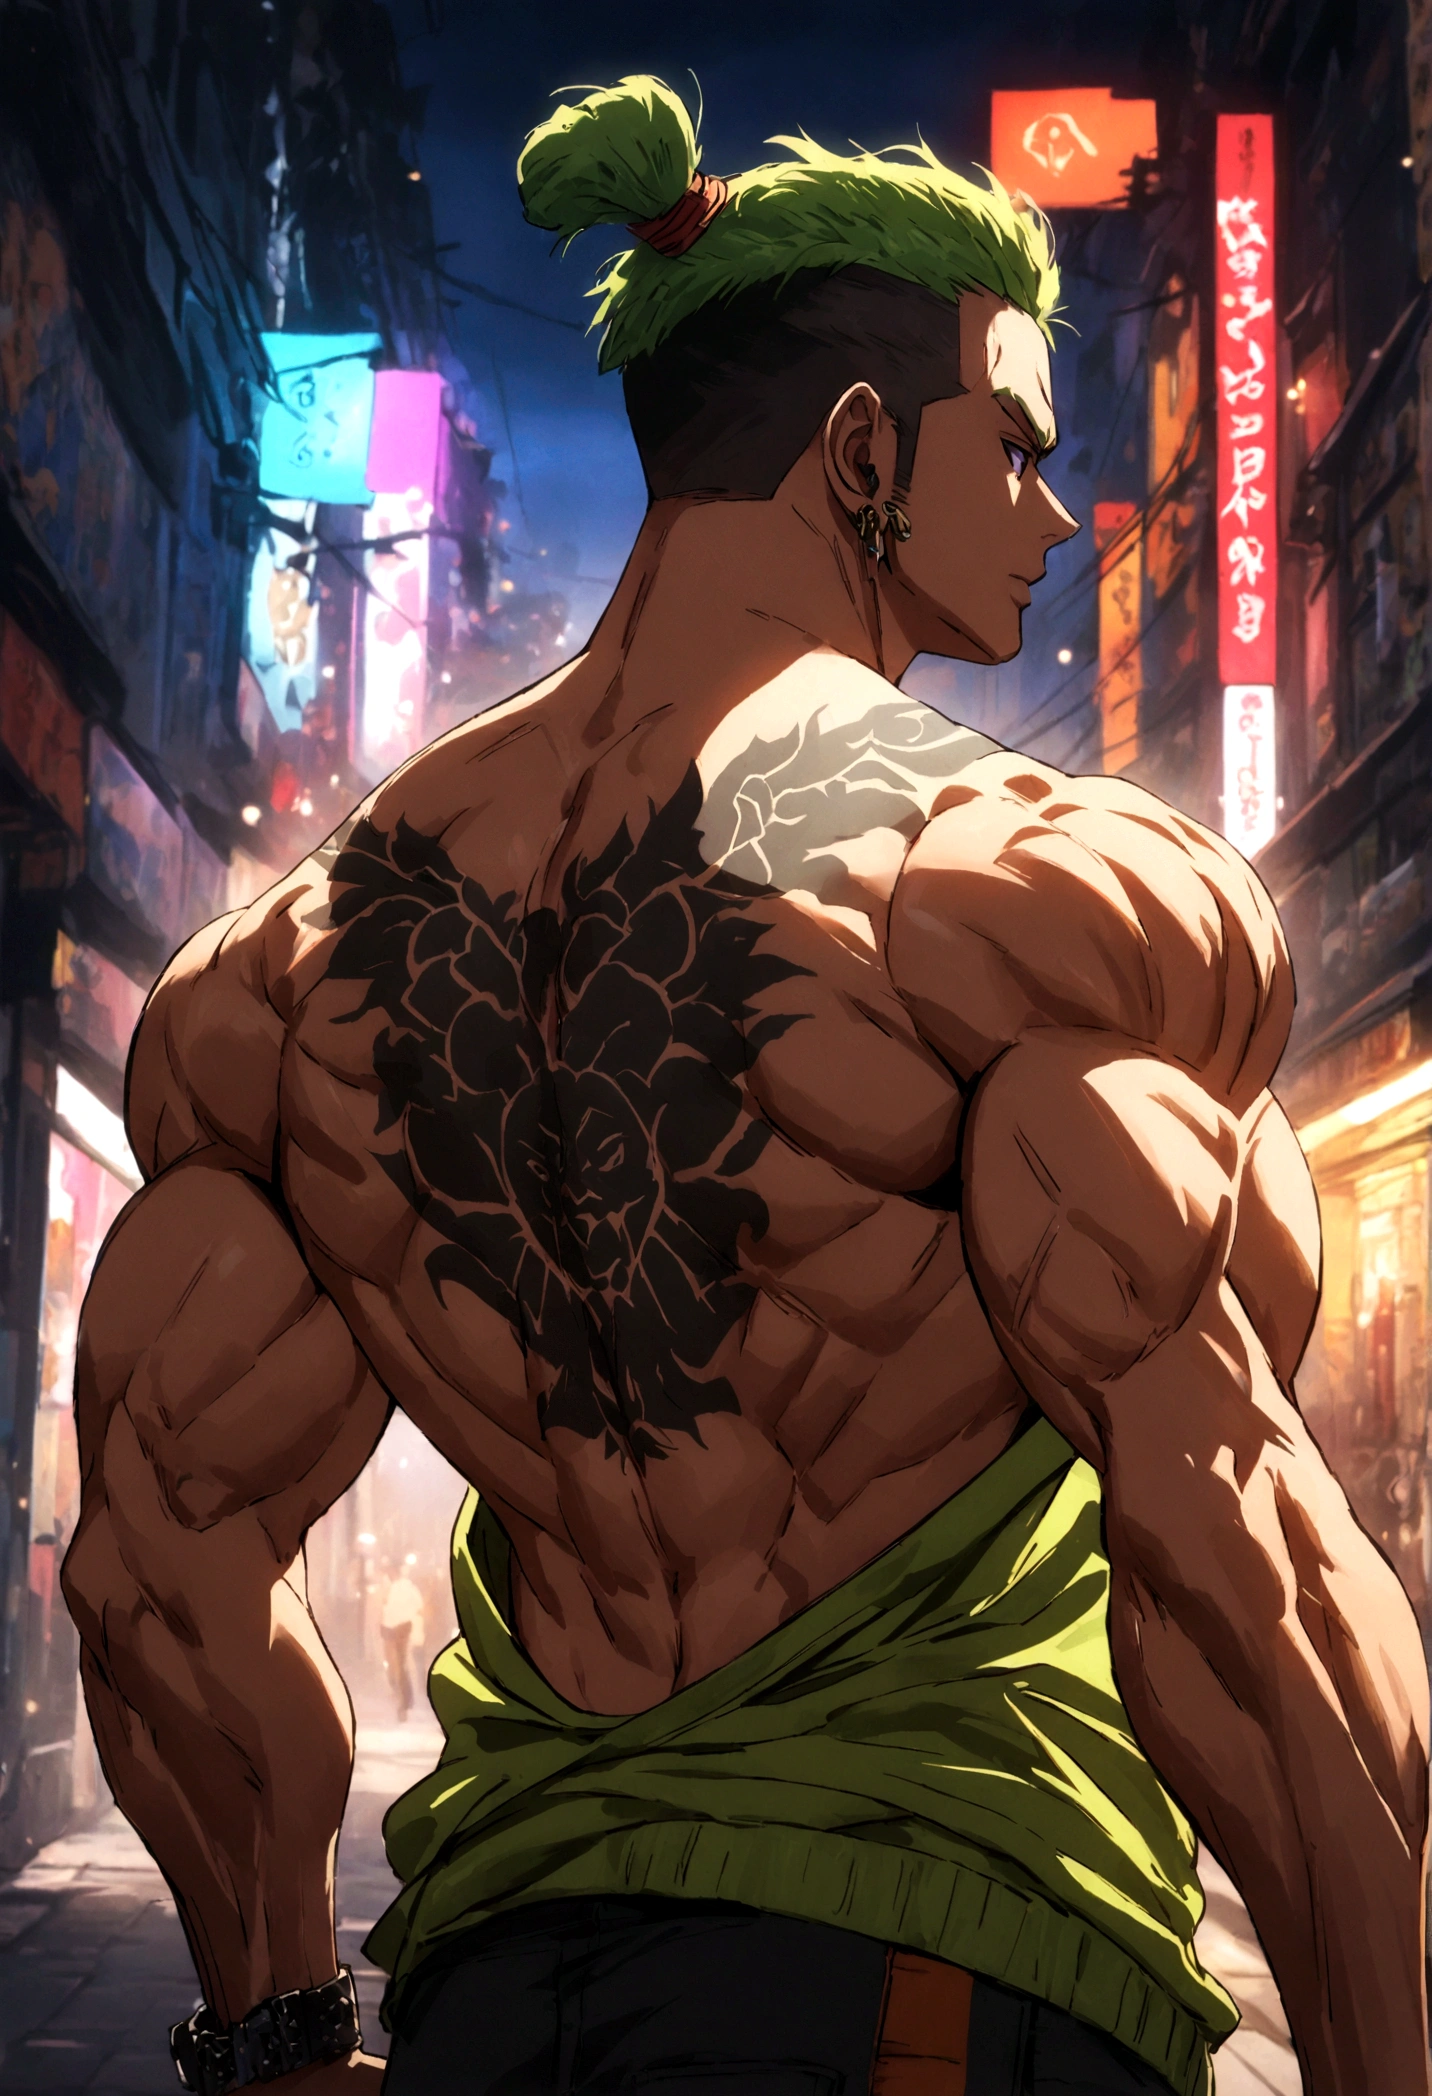 starker muskulöser Junge mit Guan Yu Tattoo auf seinem straffen nackten Rücken, Streetstyle, hochauflösende Details, urbane Atmosphäre, leuchtende Farben, dramatische Beleuchtung